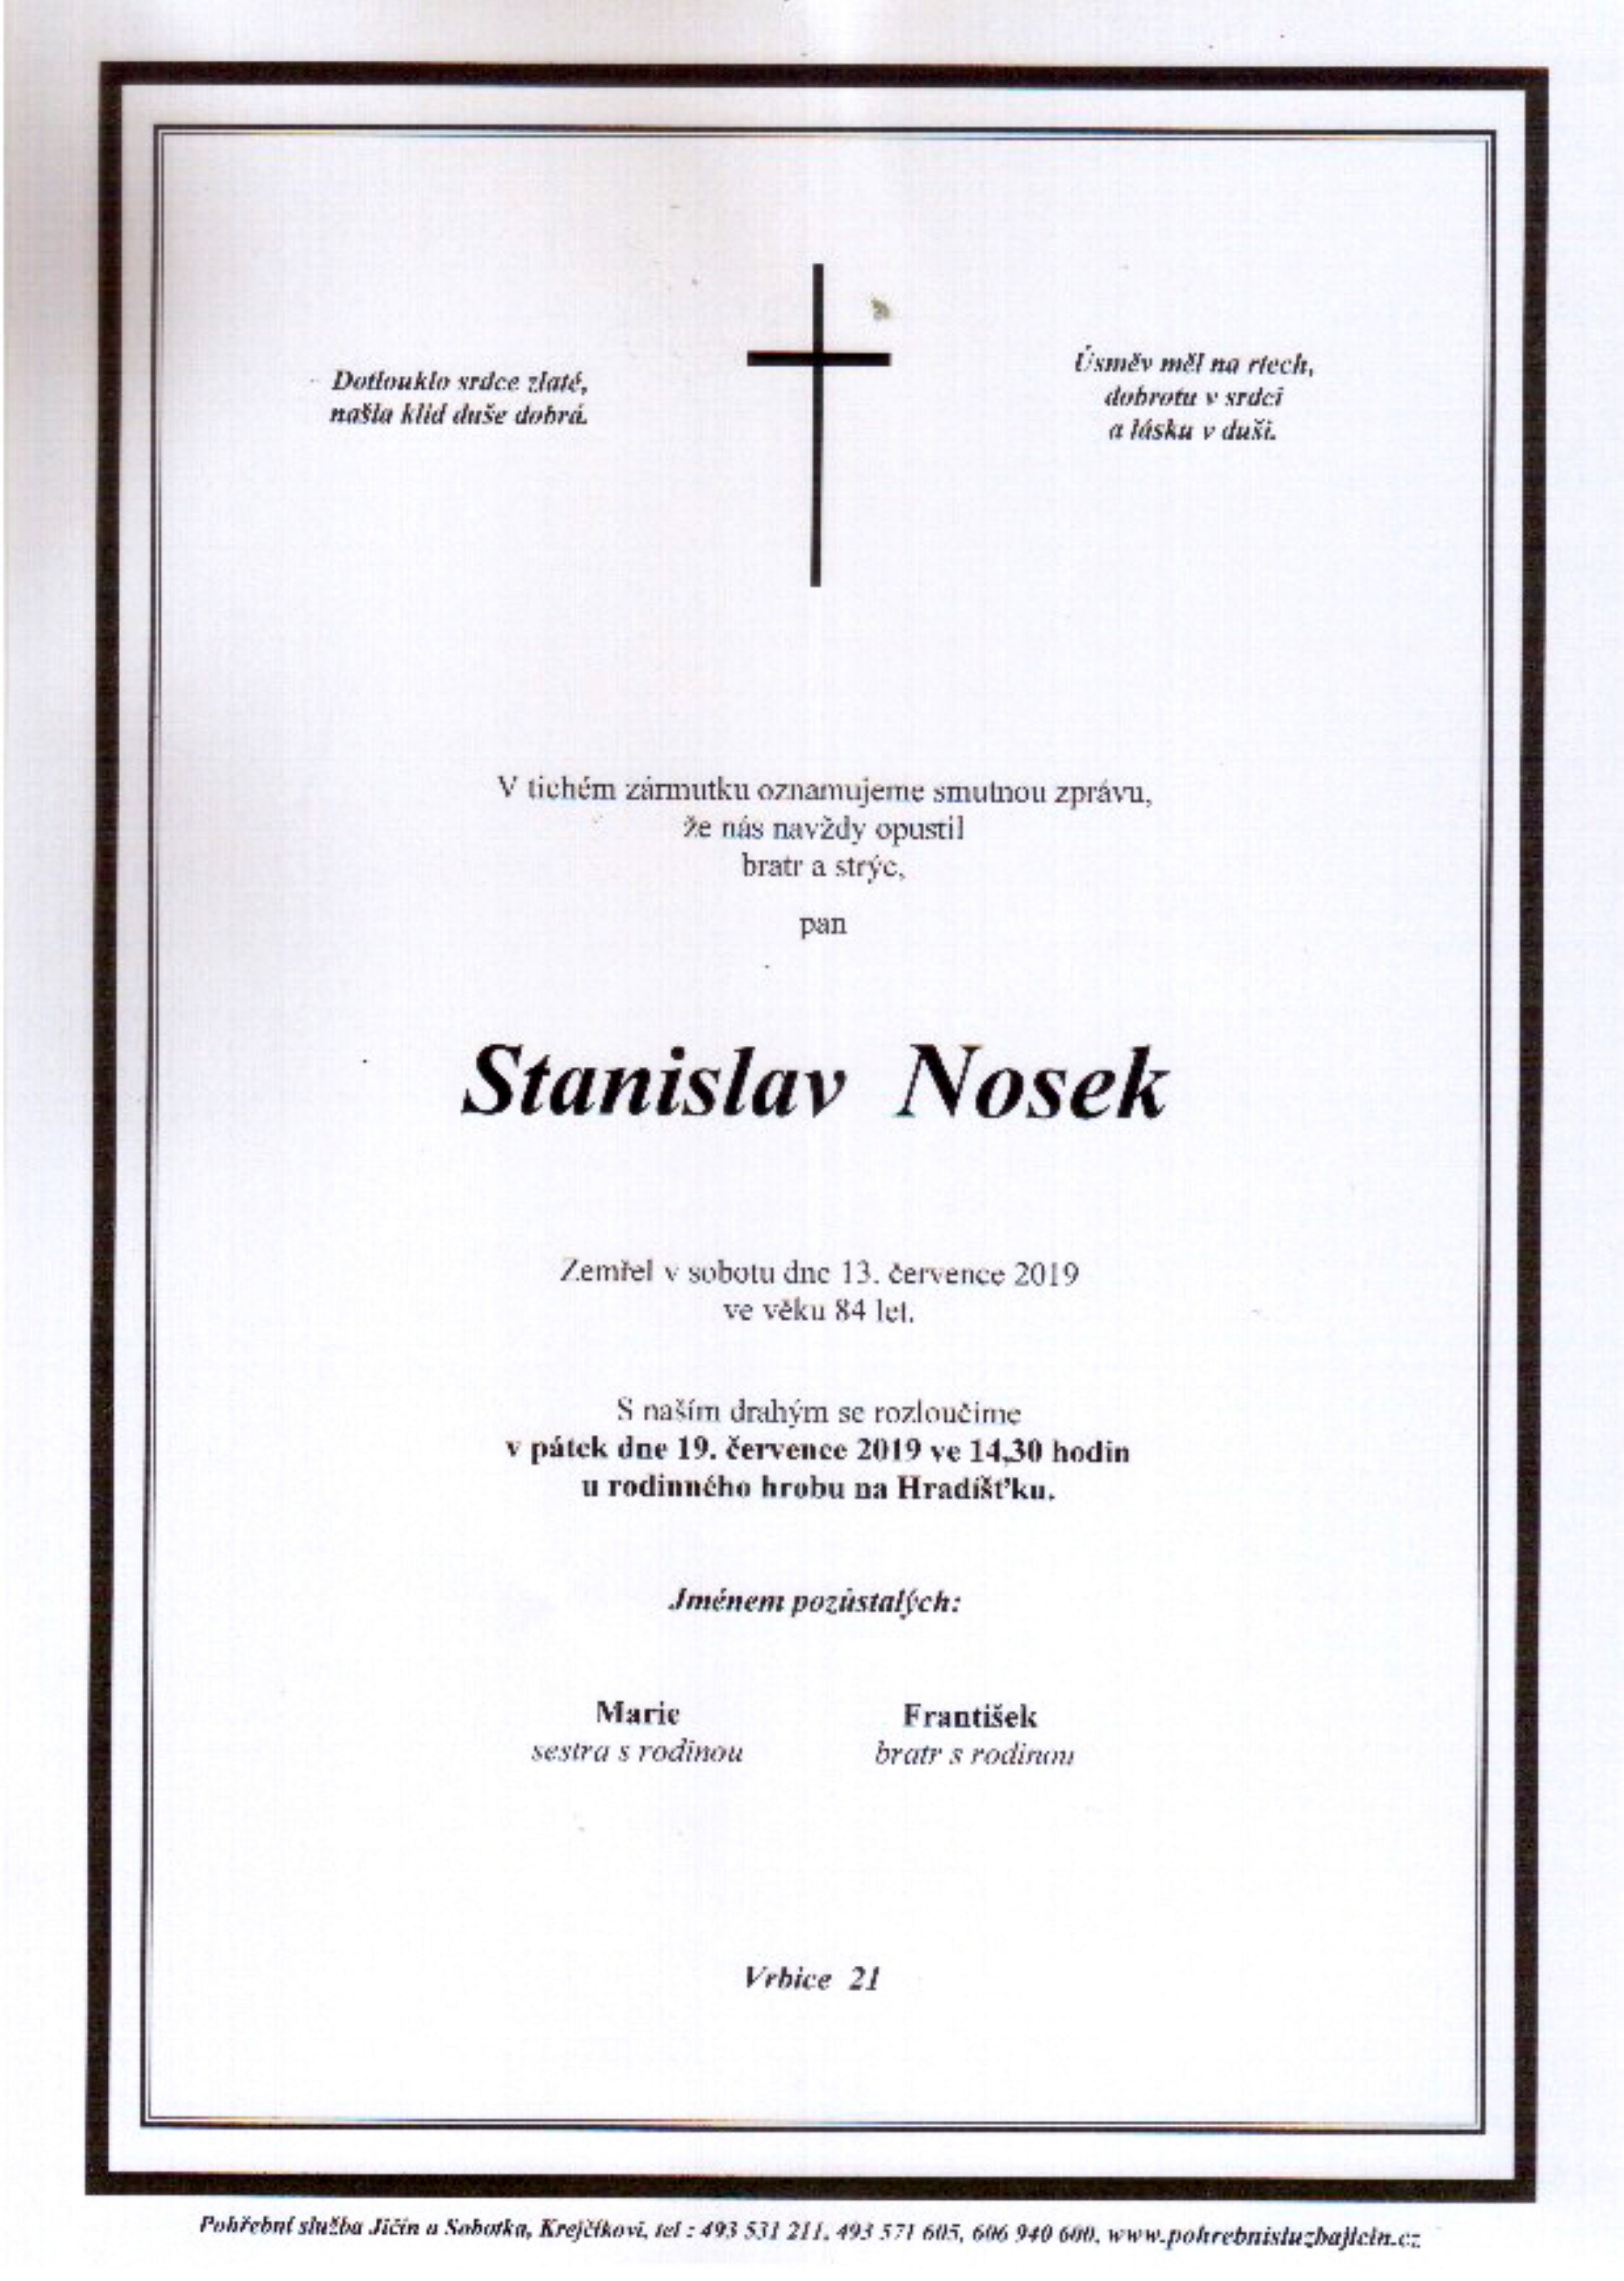 Stanislav Nosek